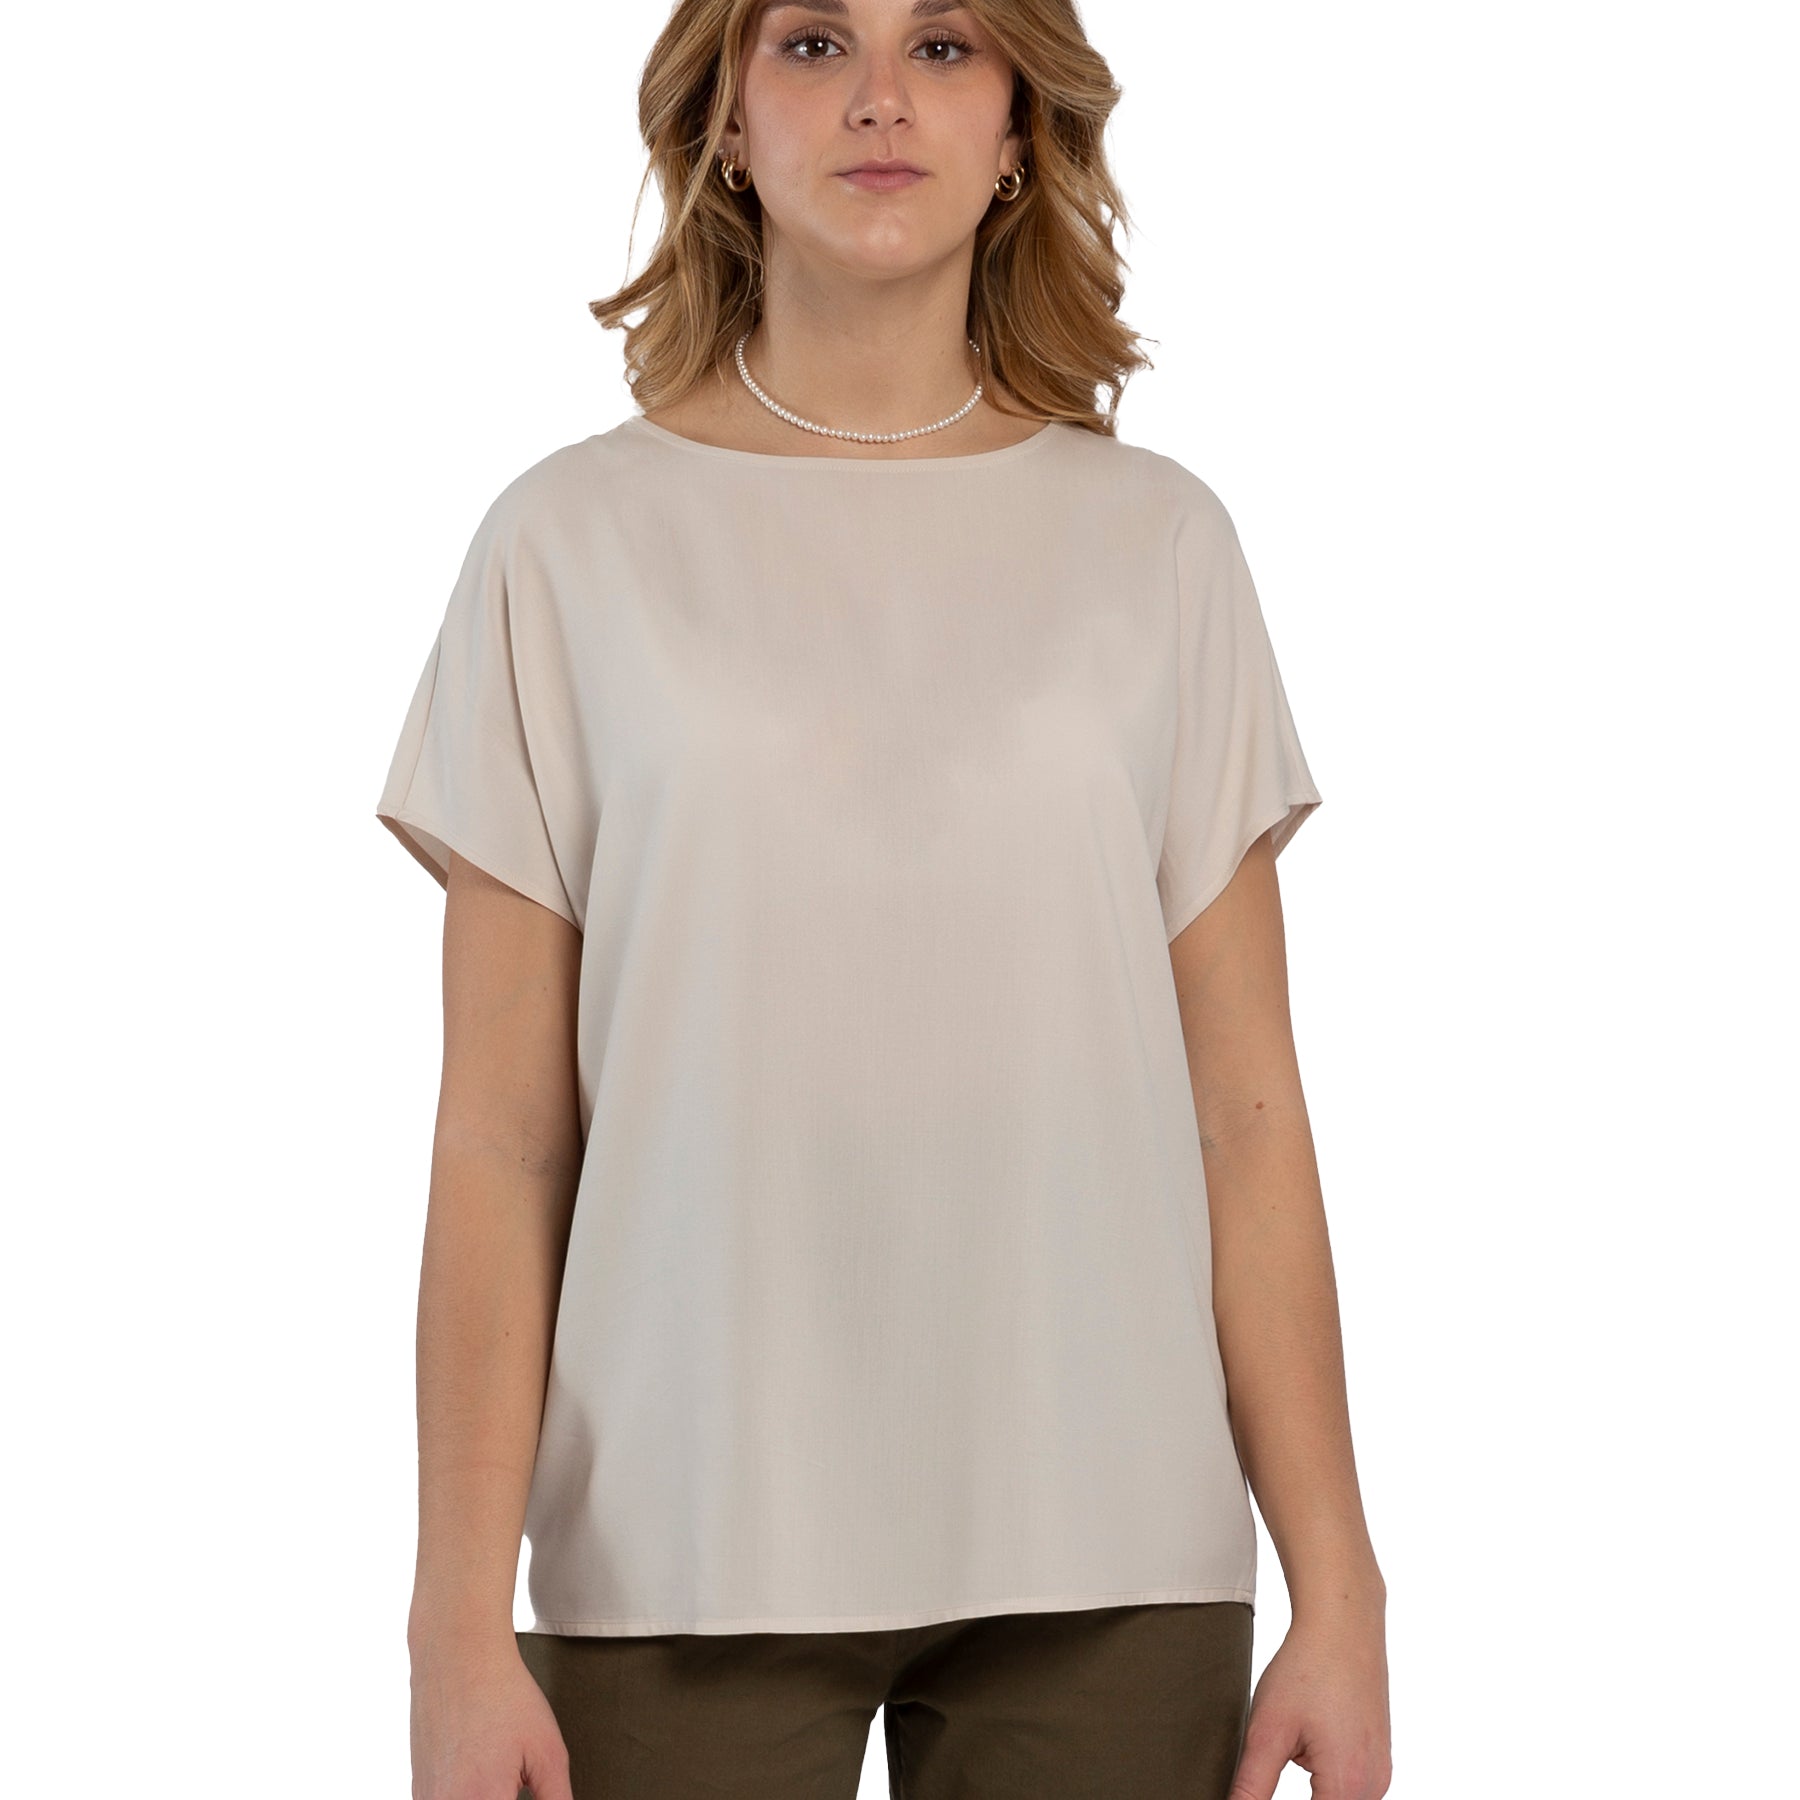 T-Shirt Donna Mezza Manica Tessuto 100% Viscosa RAGNO DM64SX